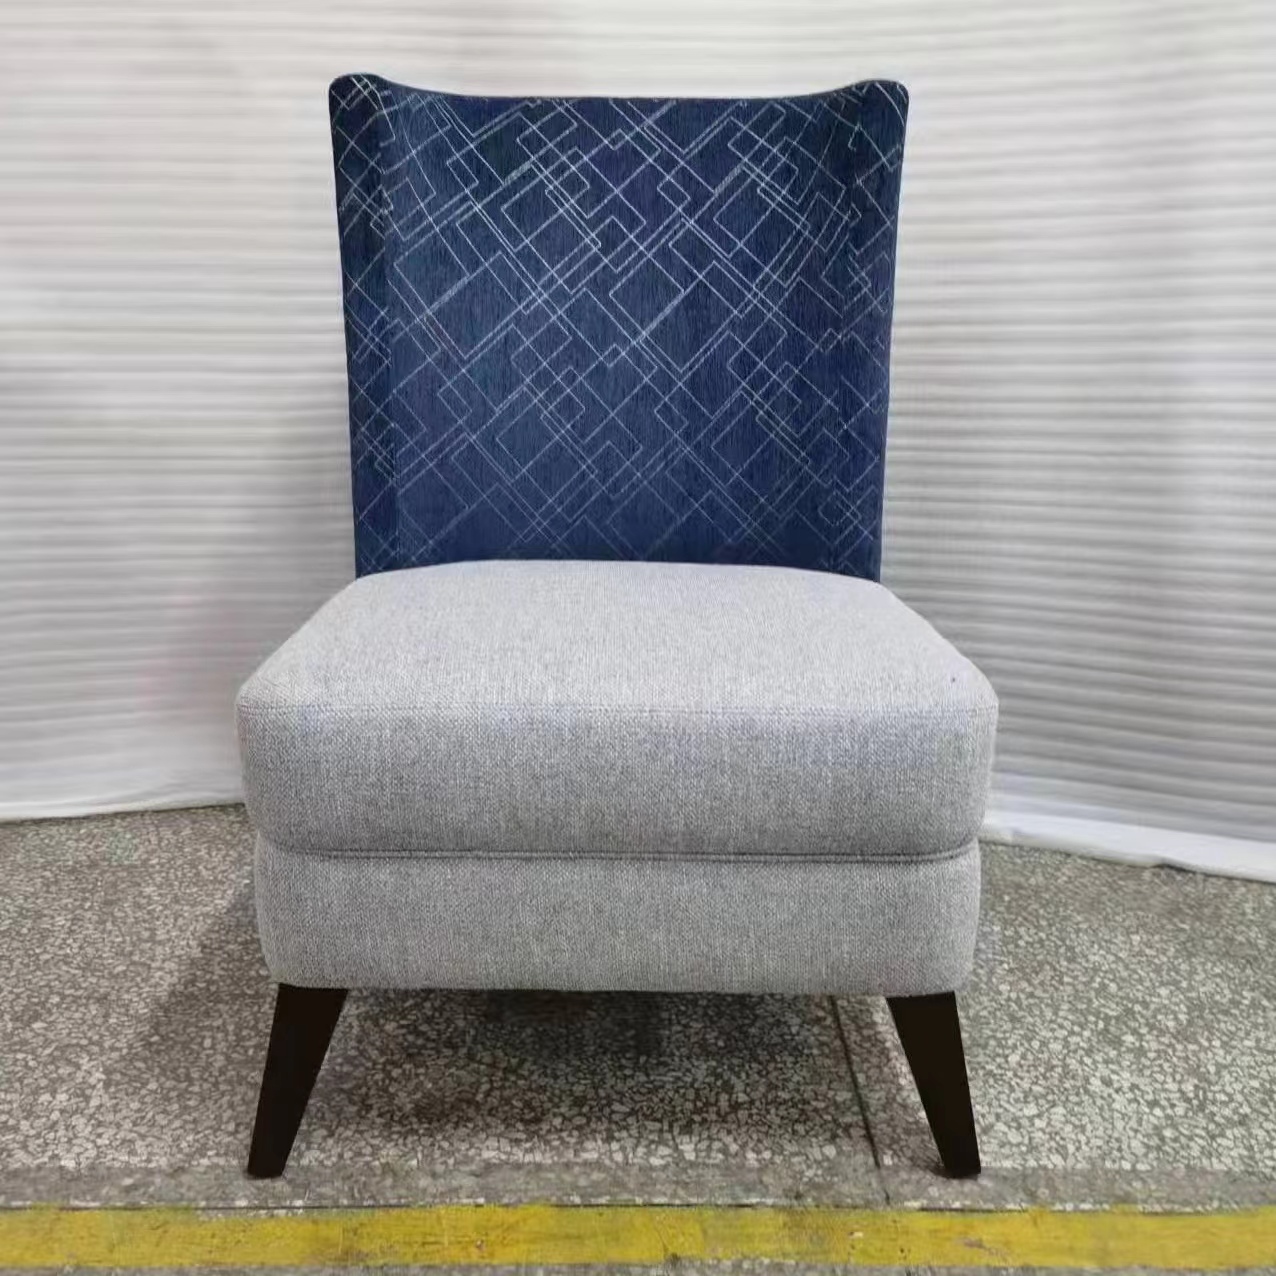 布艺沙发椅现货出售环保海棉3种颜色方案可选-仁力